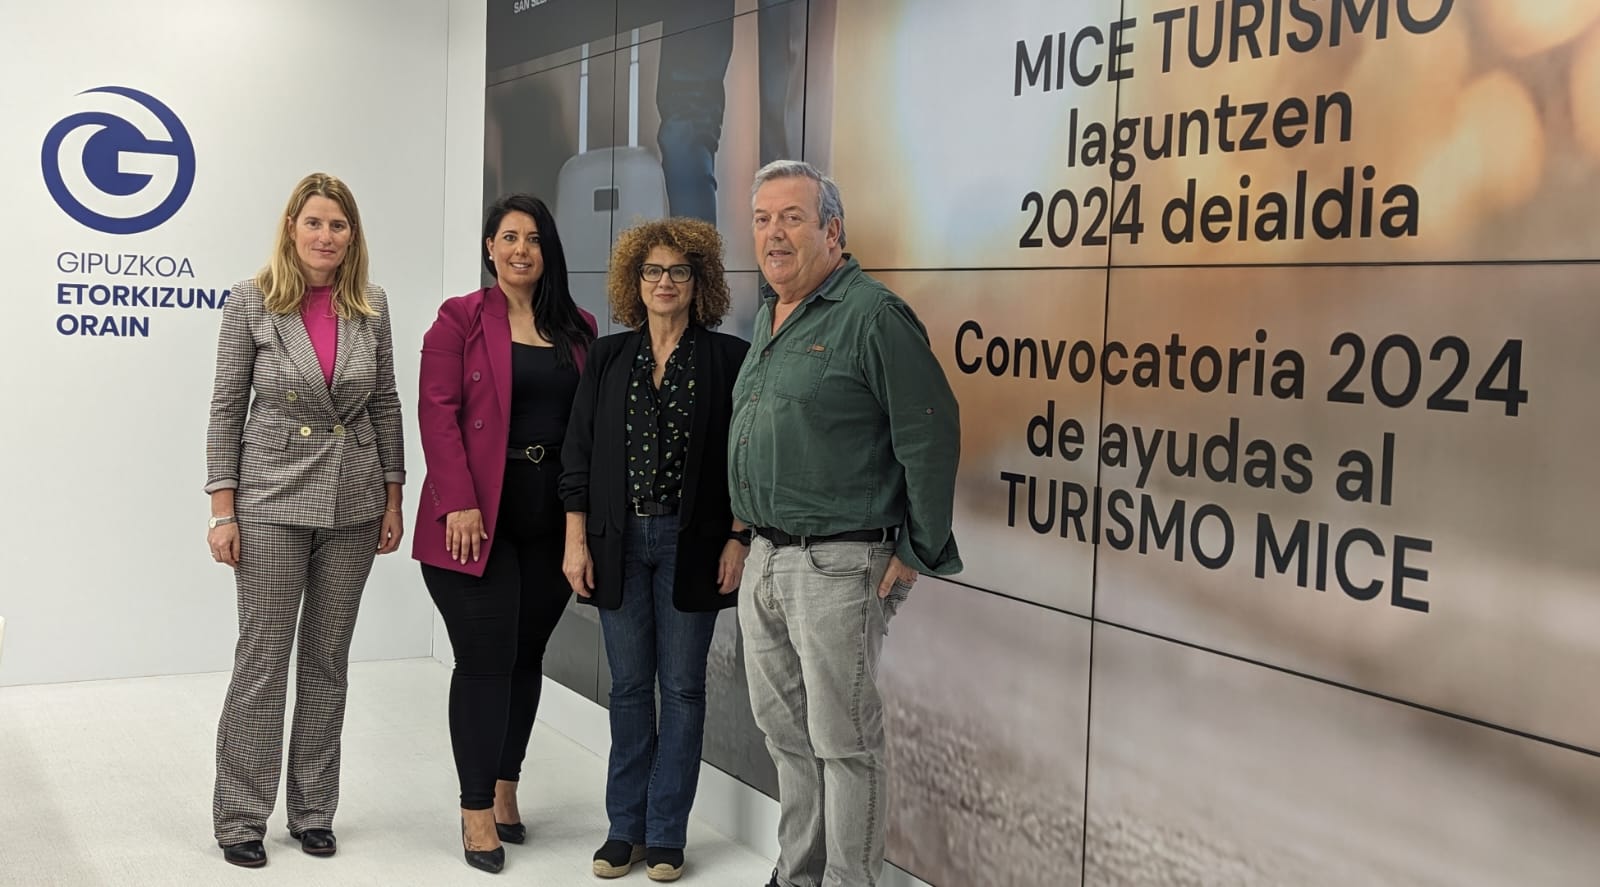 La diputada Azahara Domínguez en la presentación de las ayudas al turismo MICE 2024....